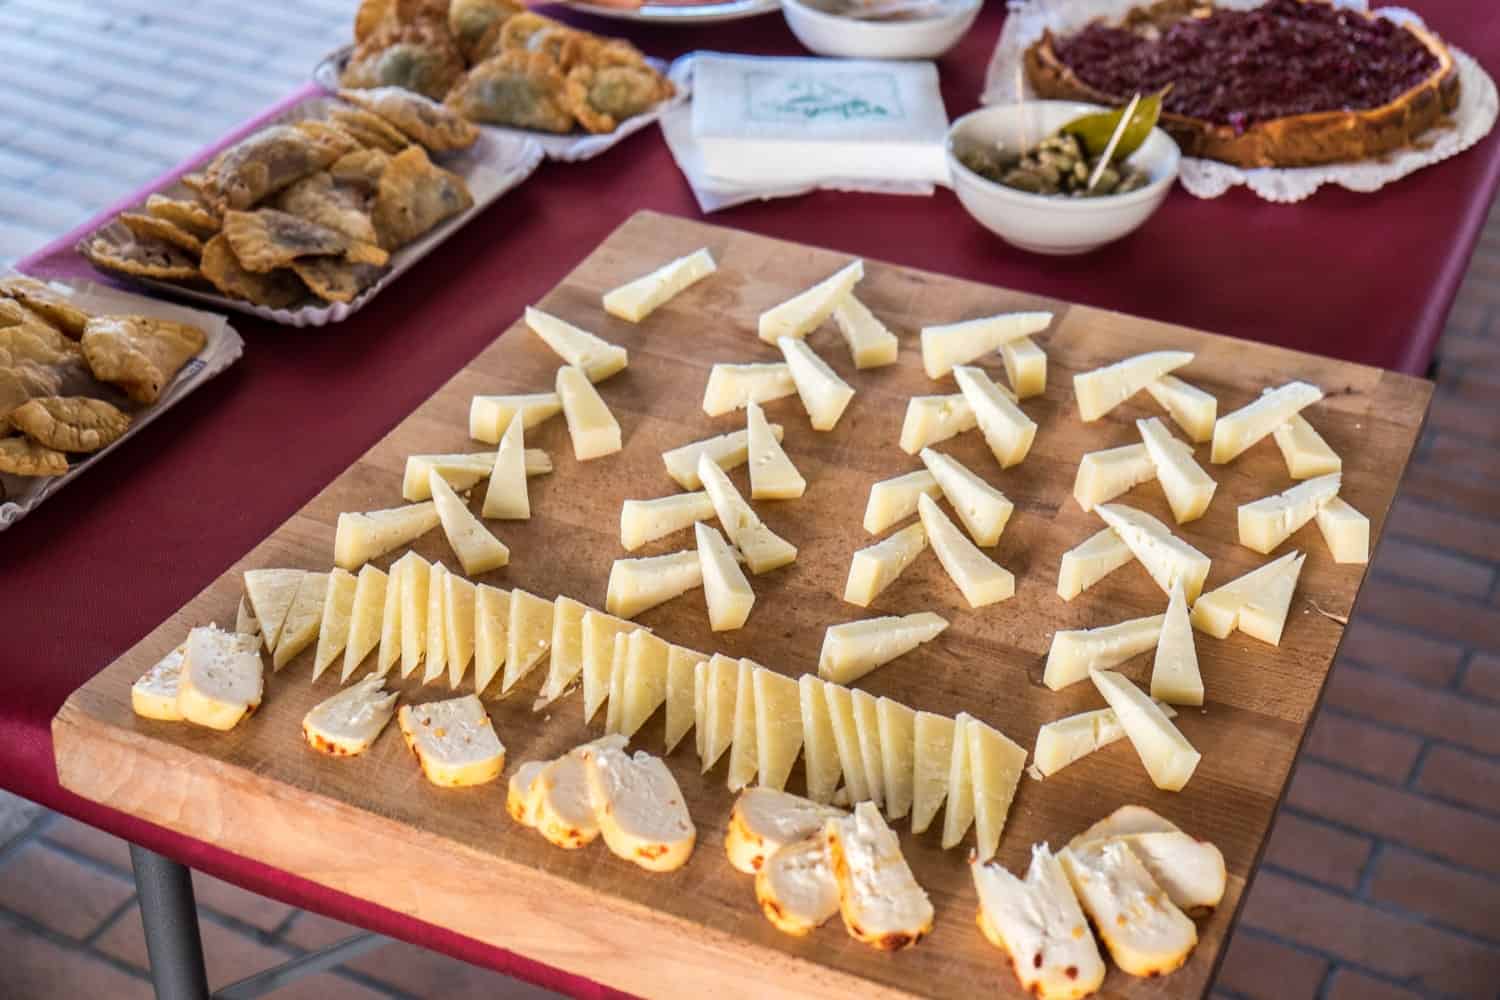 Cheese samples at the Saturday food market in San Marino